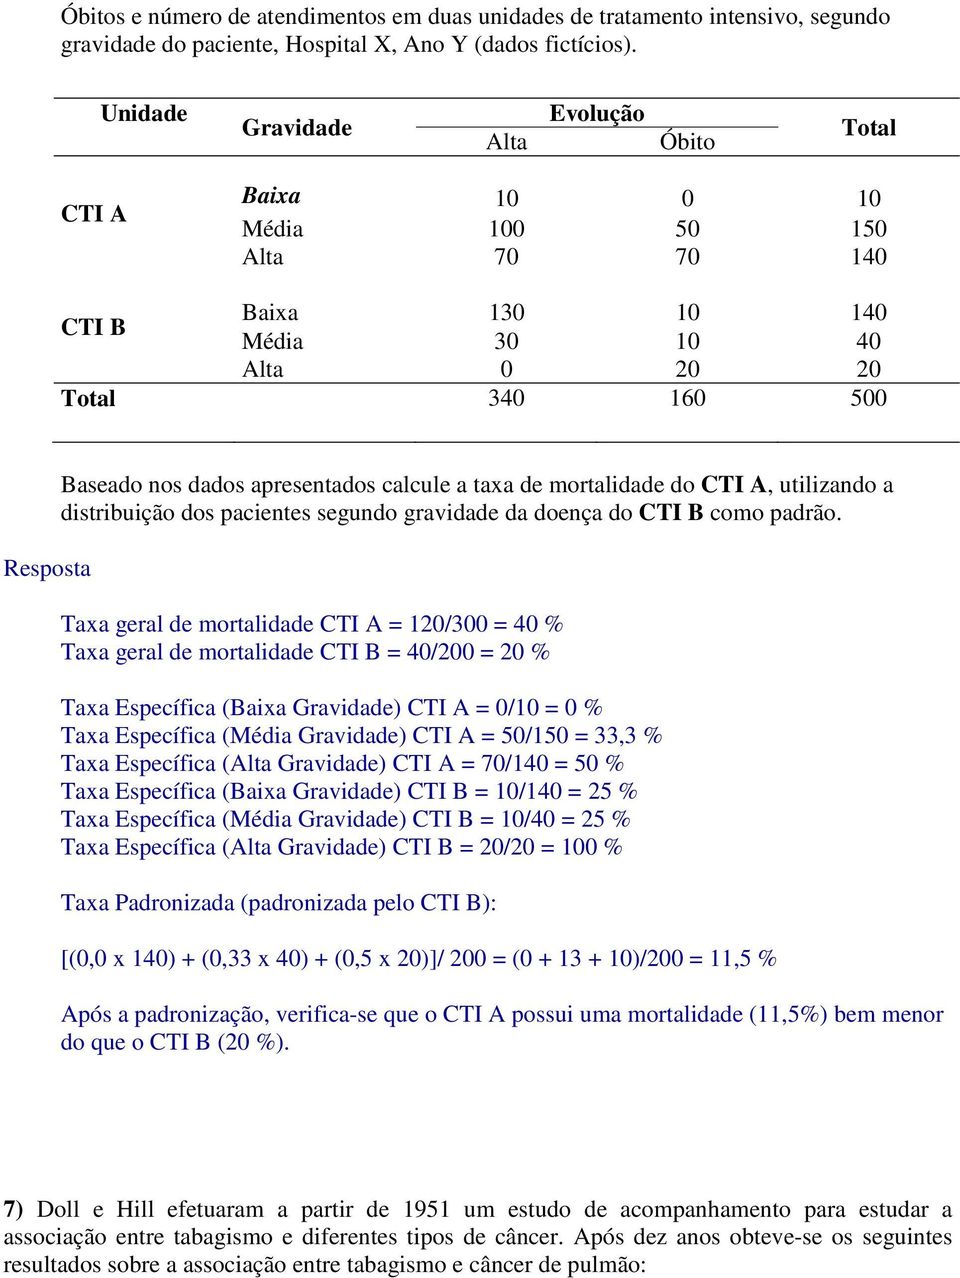 apresentados calcule a taxa de mortalidade do CTI A, utilizando a distribuição dos pacientes segundo gravidade da doença do CTI B como padrão.